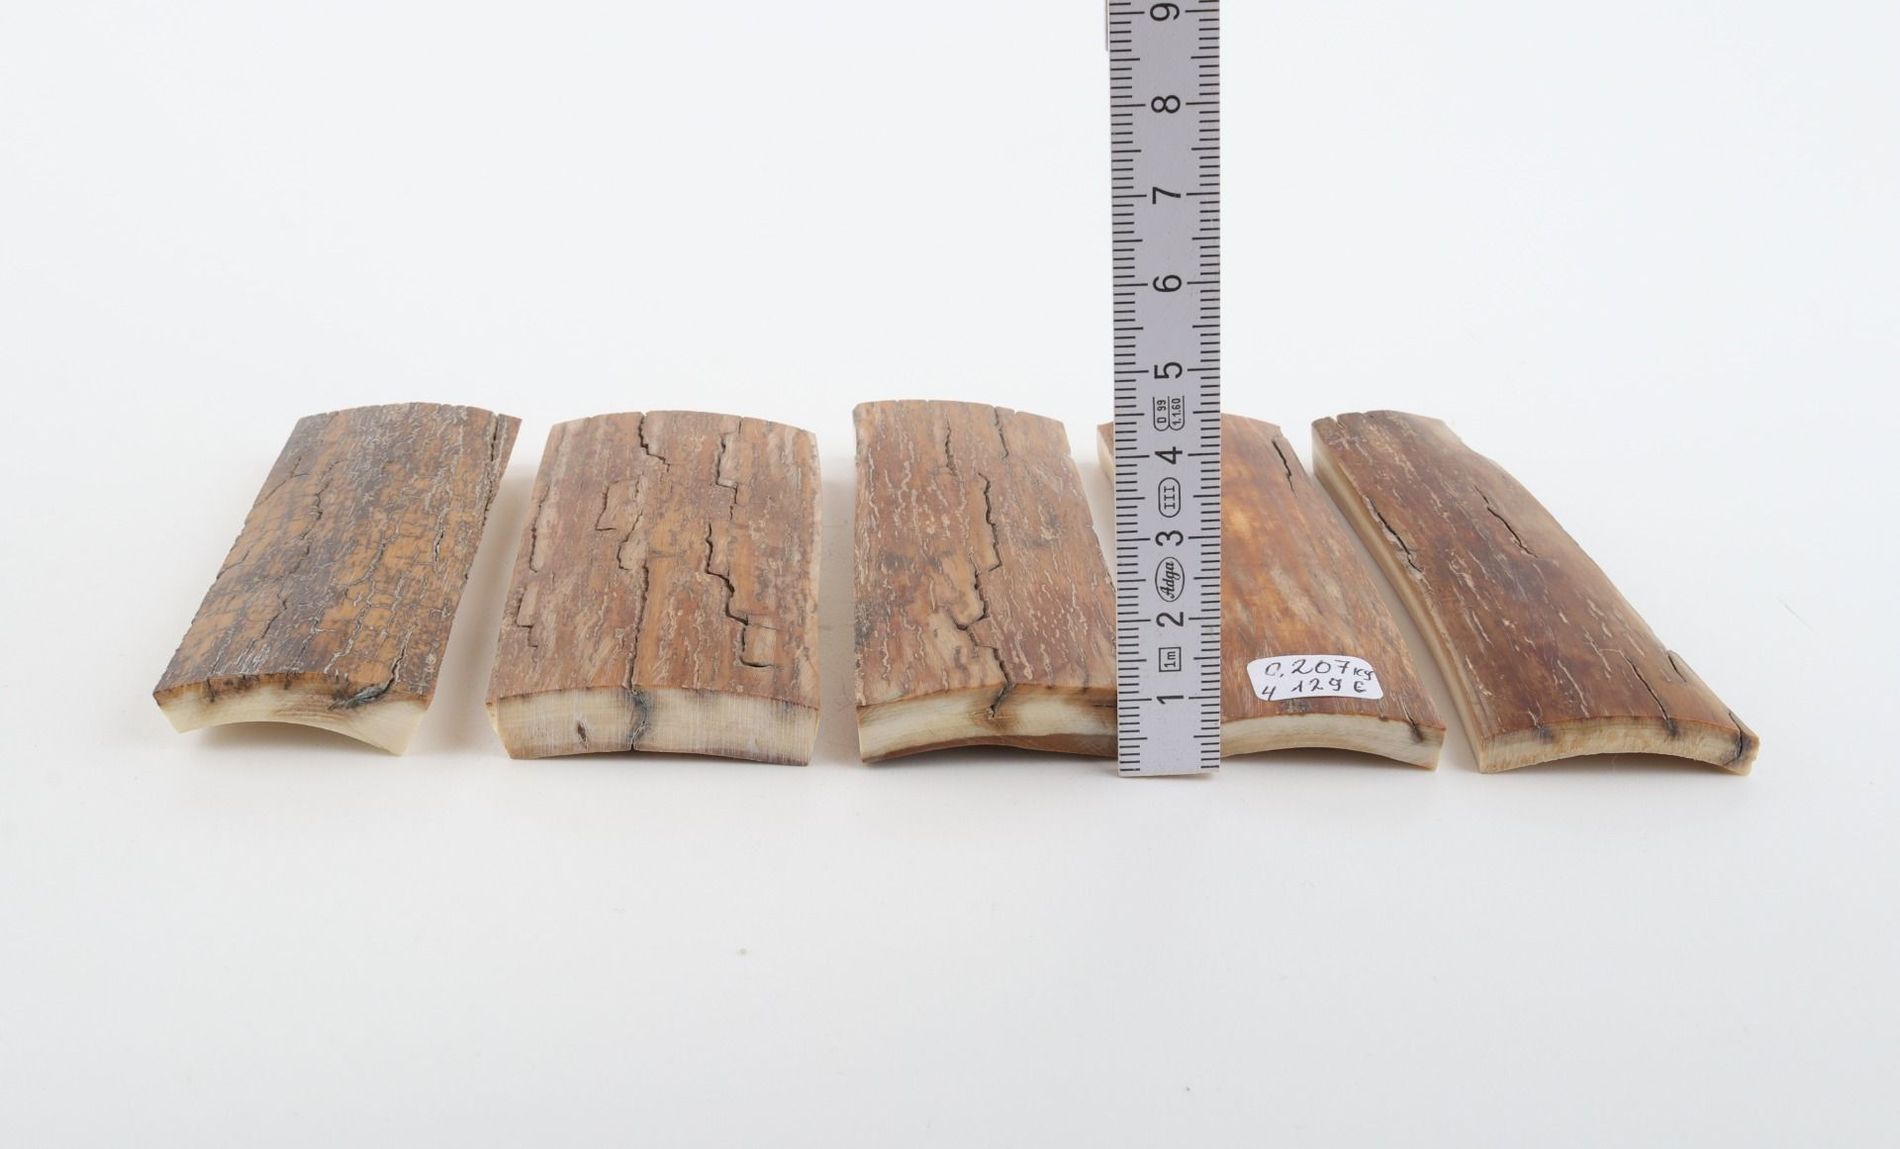 Brown-caramel mammoth bark pieces